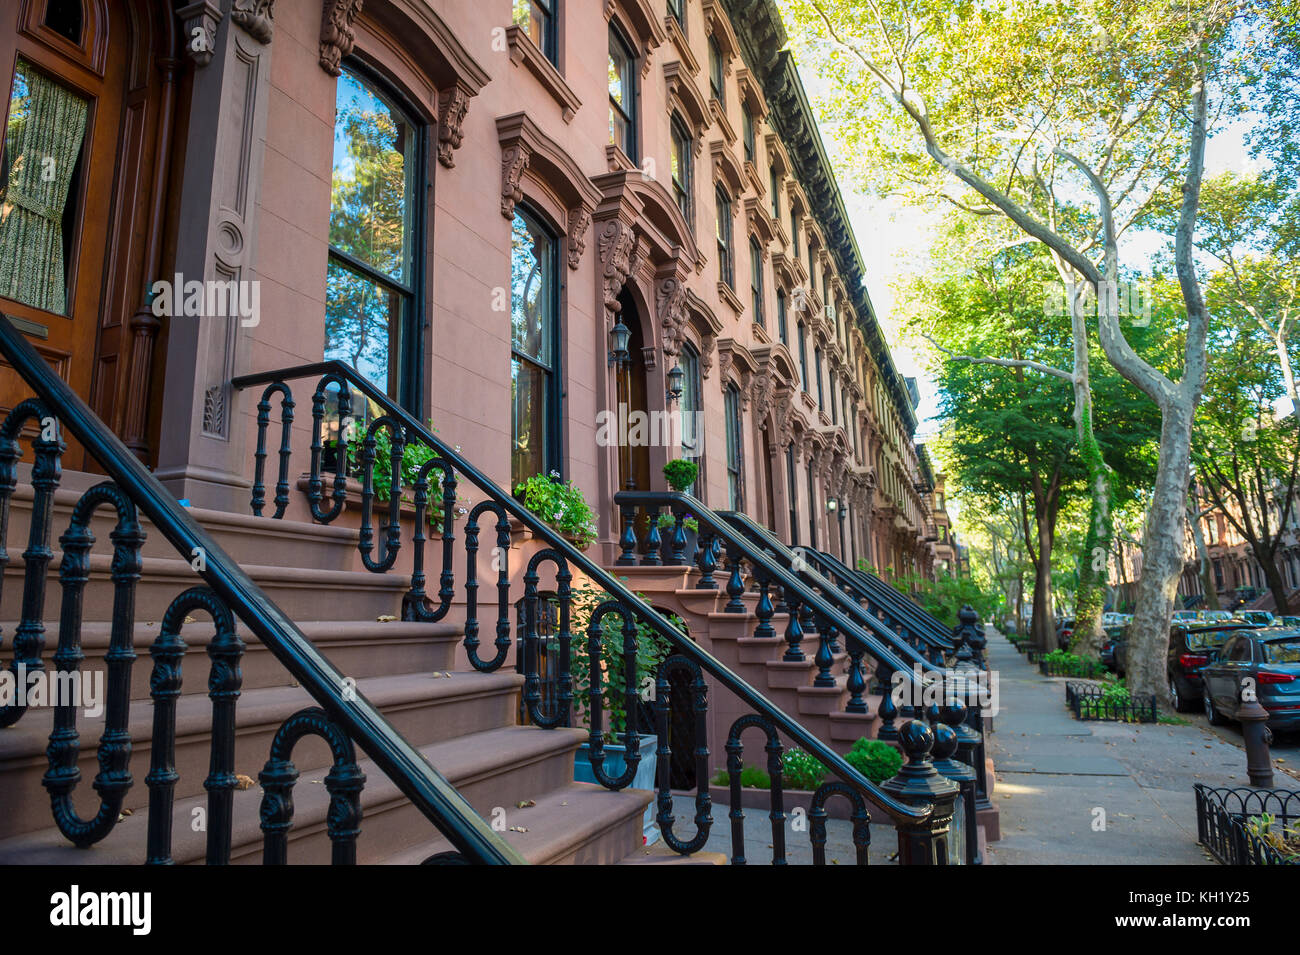 Malerischer Blick auf eine klassische Brooklyn brownstone Block mit einem langen Fassade und verzierten stoop Balustraden an einem Sommertag in new york city Stockfoto